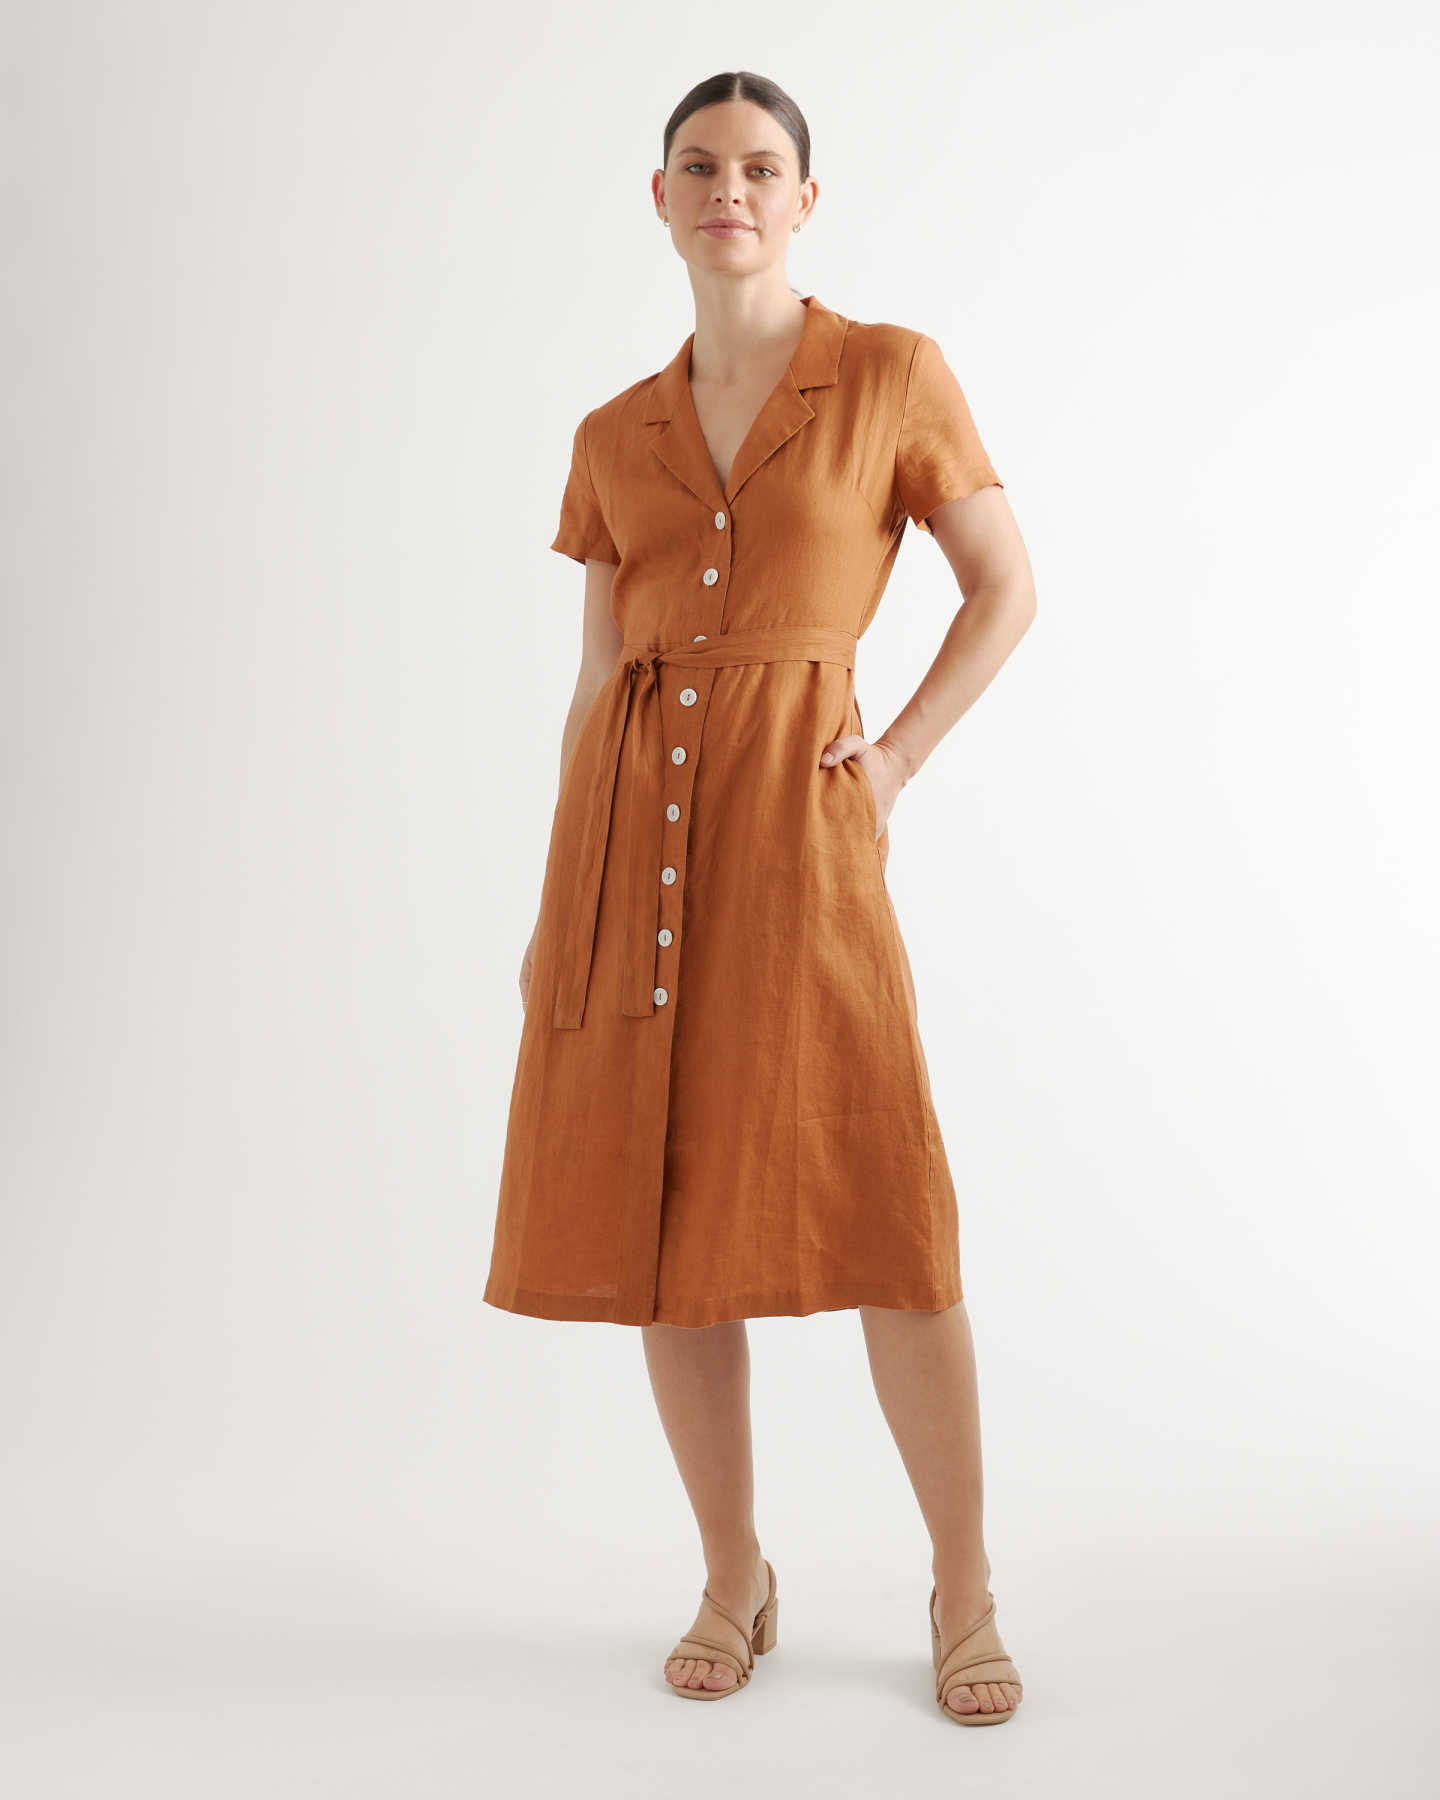 100% European Linen Button Front Dress - Terracotta - 4